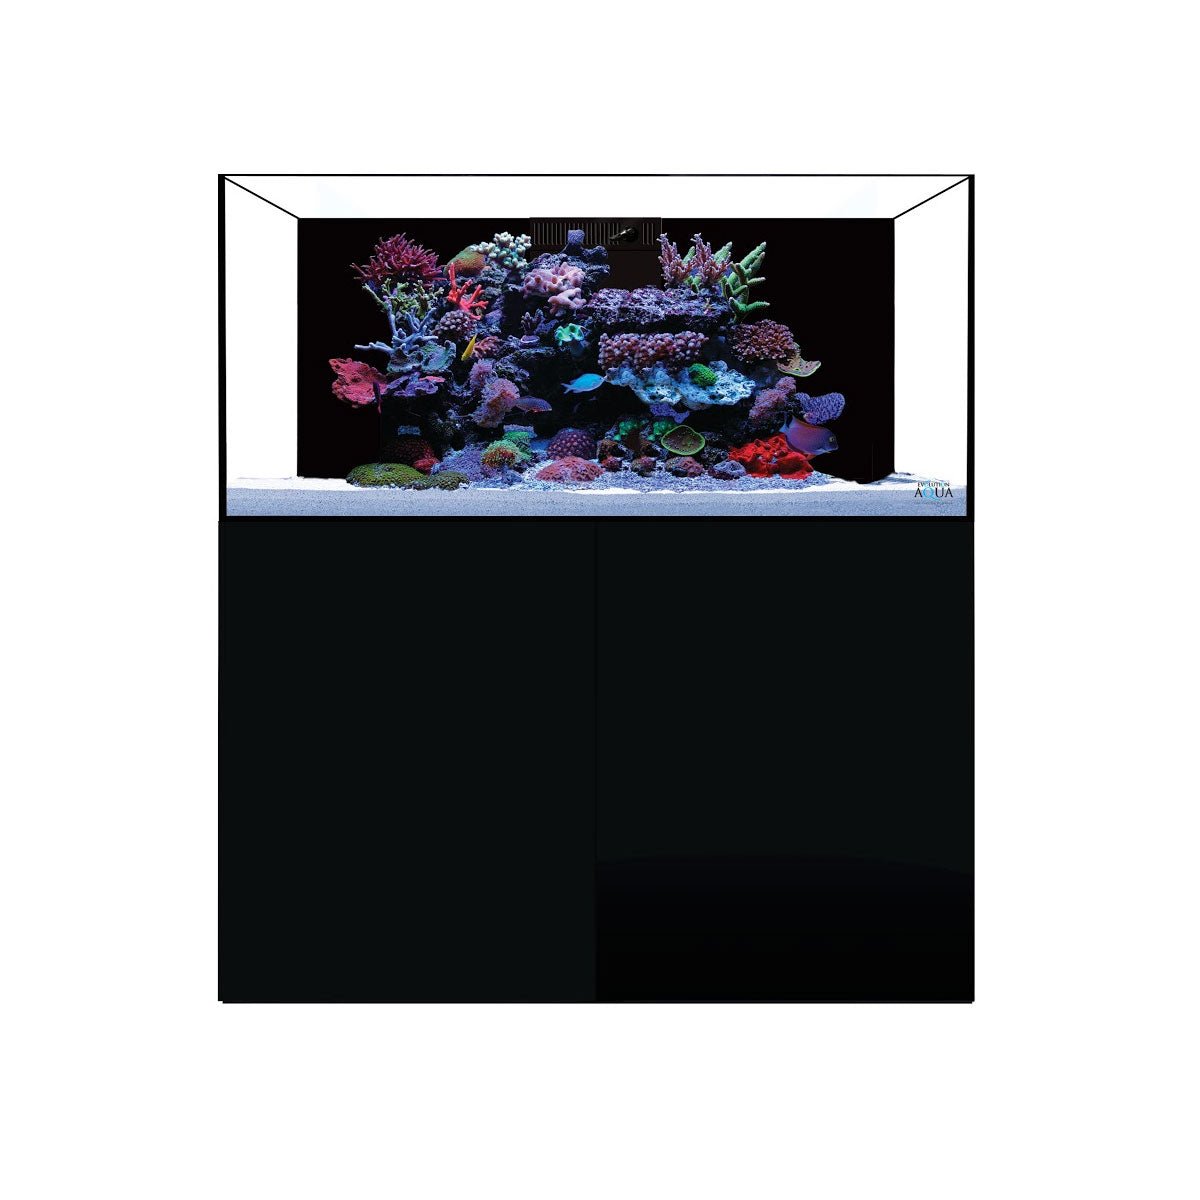 D-D Aqua-Pro Reef 1200 - Tobacco Oak - AquaFrame Cabinet - Charterhouse Aquatics